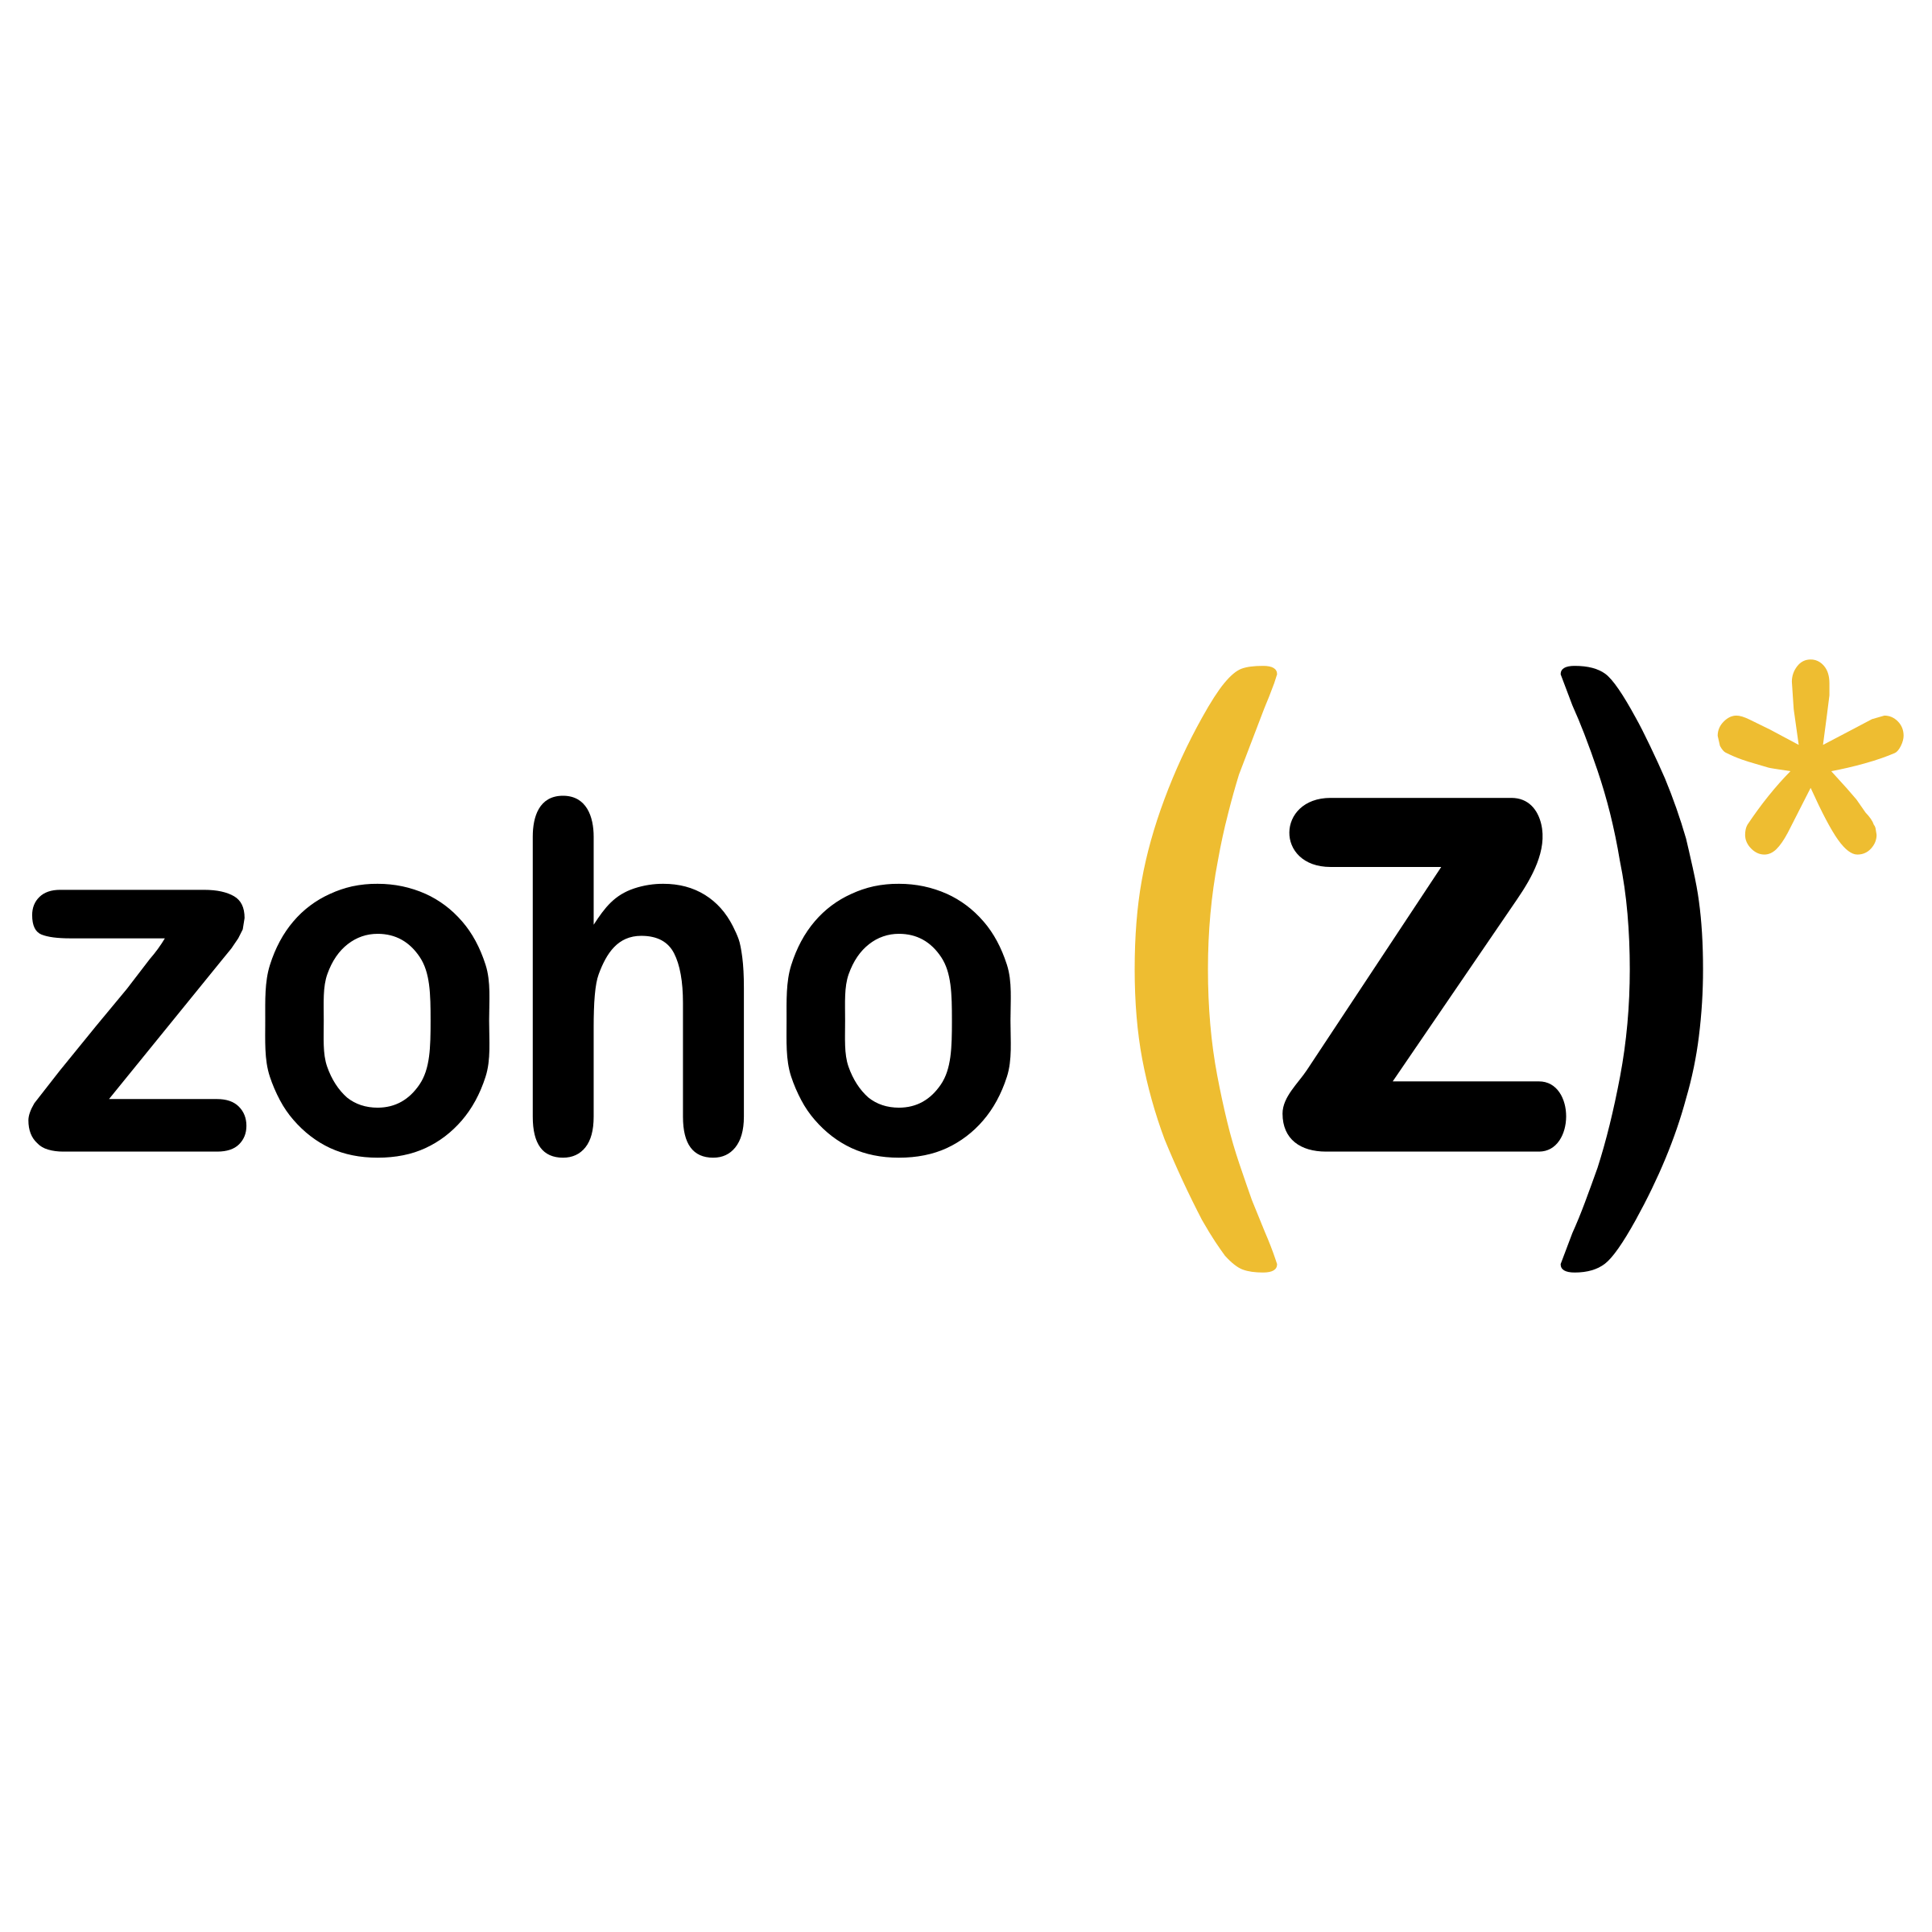 Zoho Logo - Zoho Logo PNG Transparent & SVG Vector - Freebie Supply